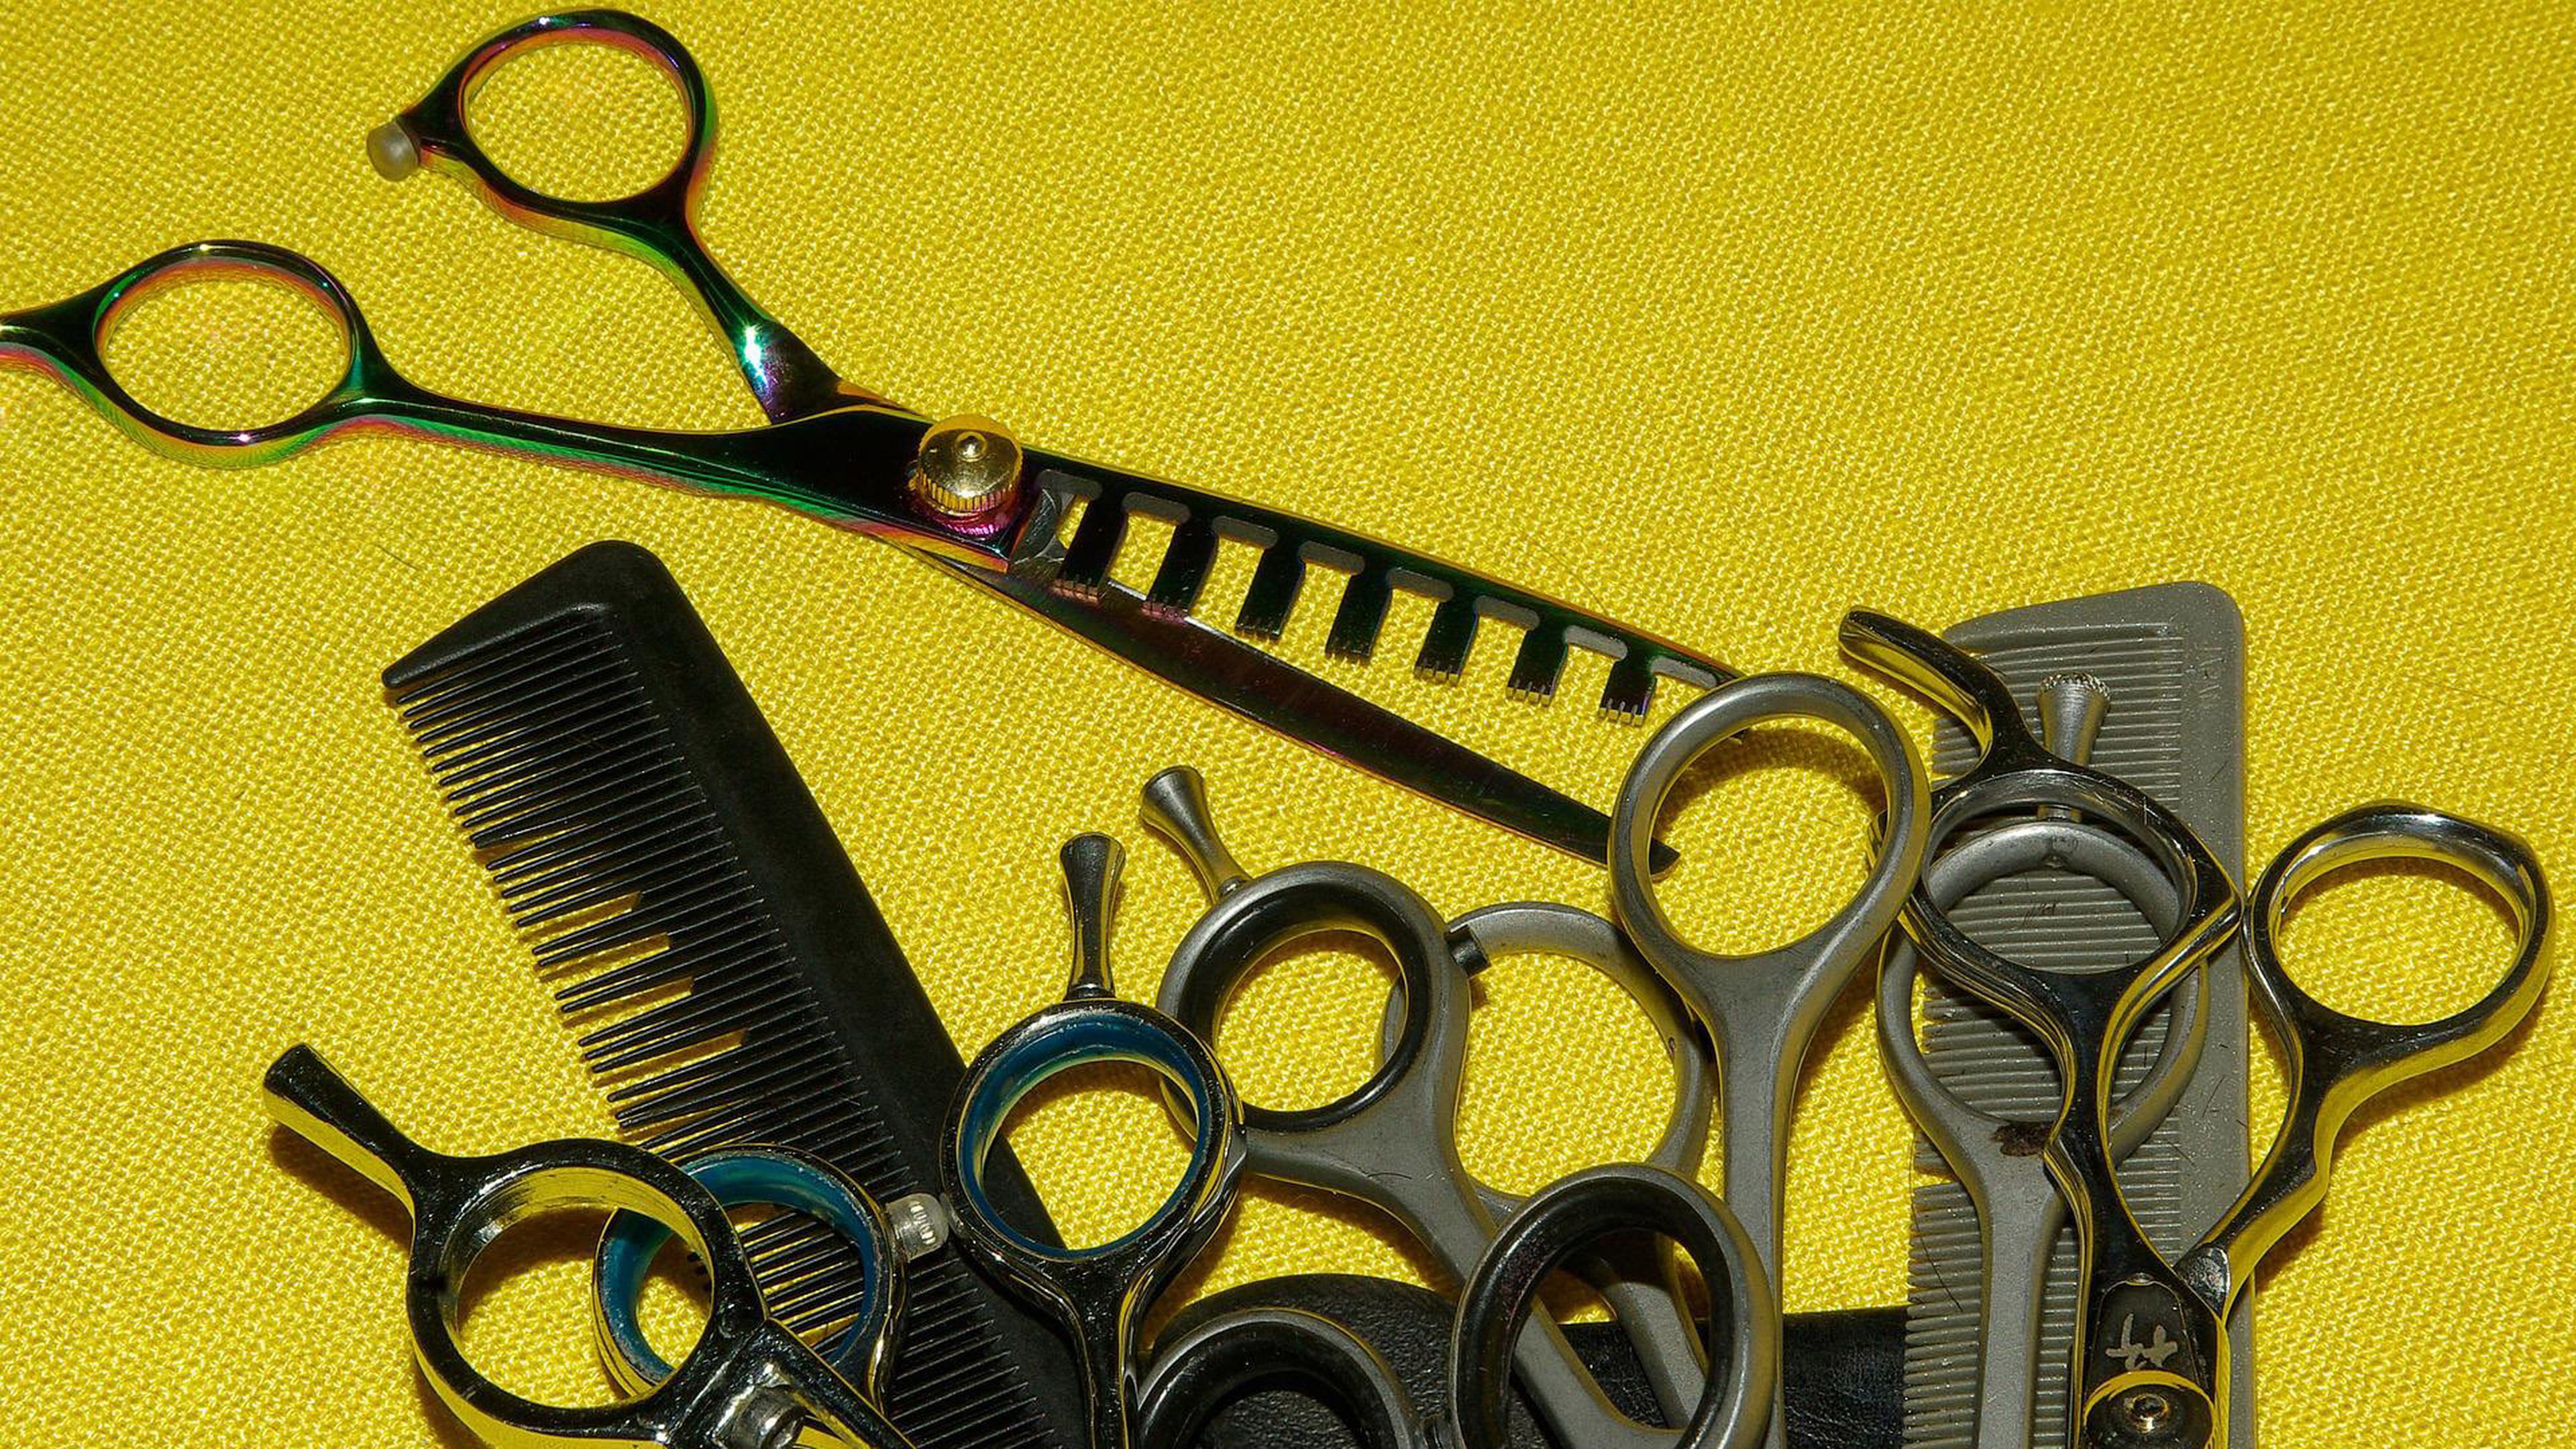  3 Claveles – Juego de tijeras de coser : Arte y Manualidades